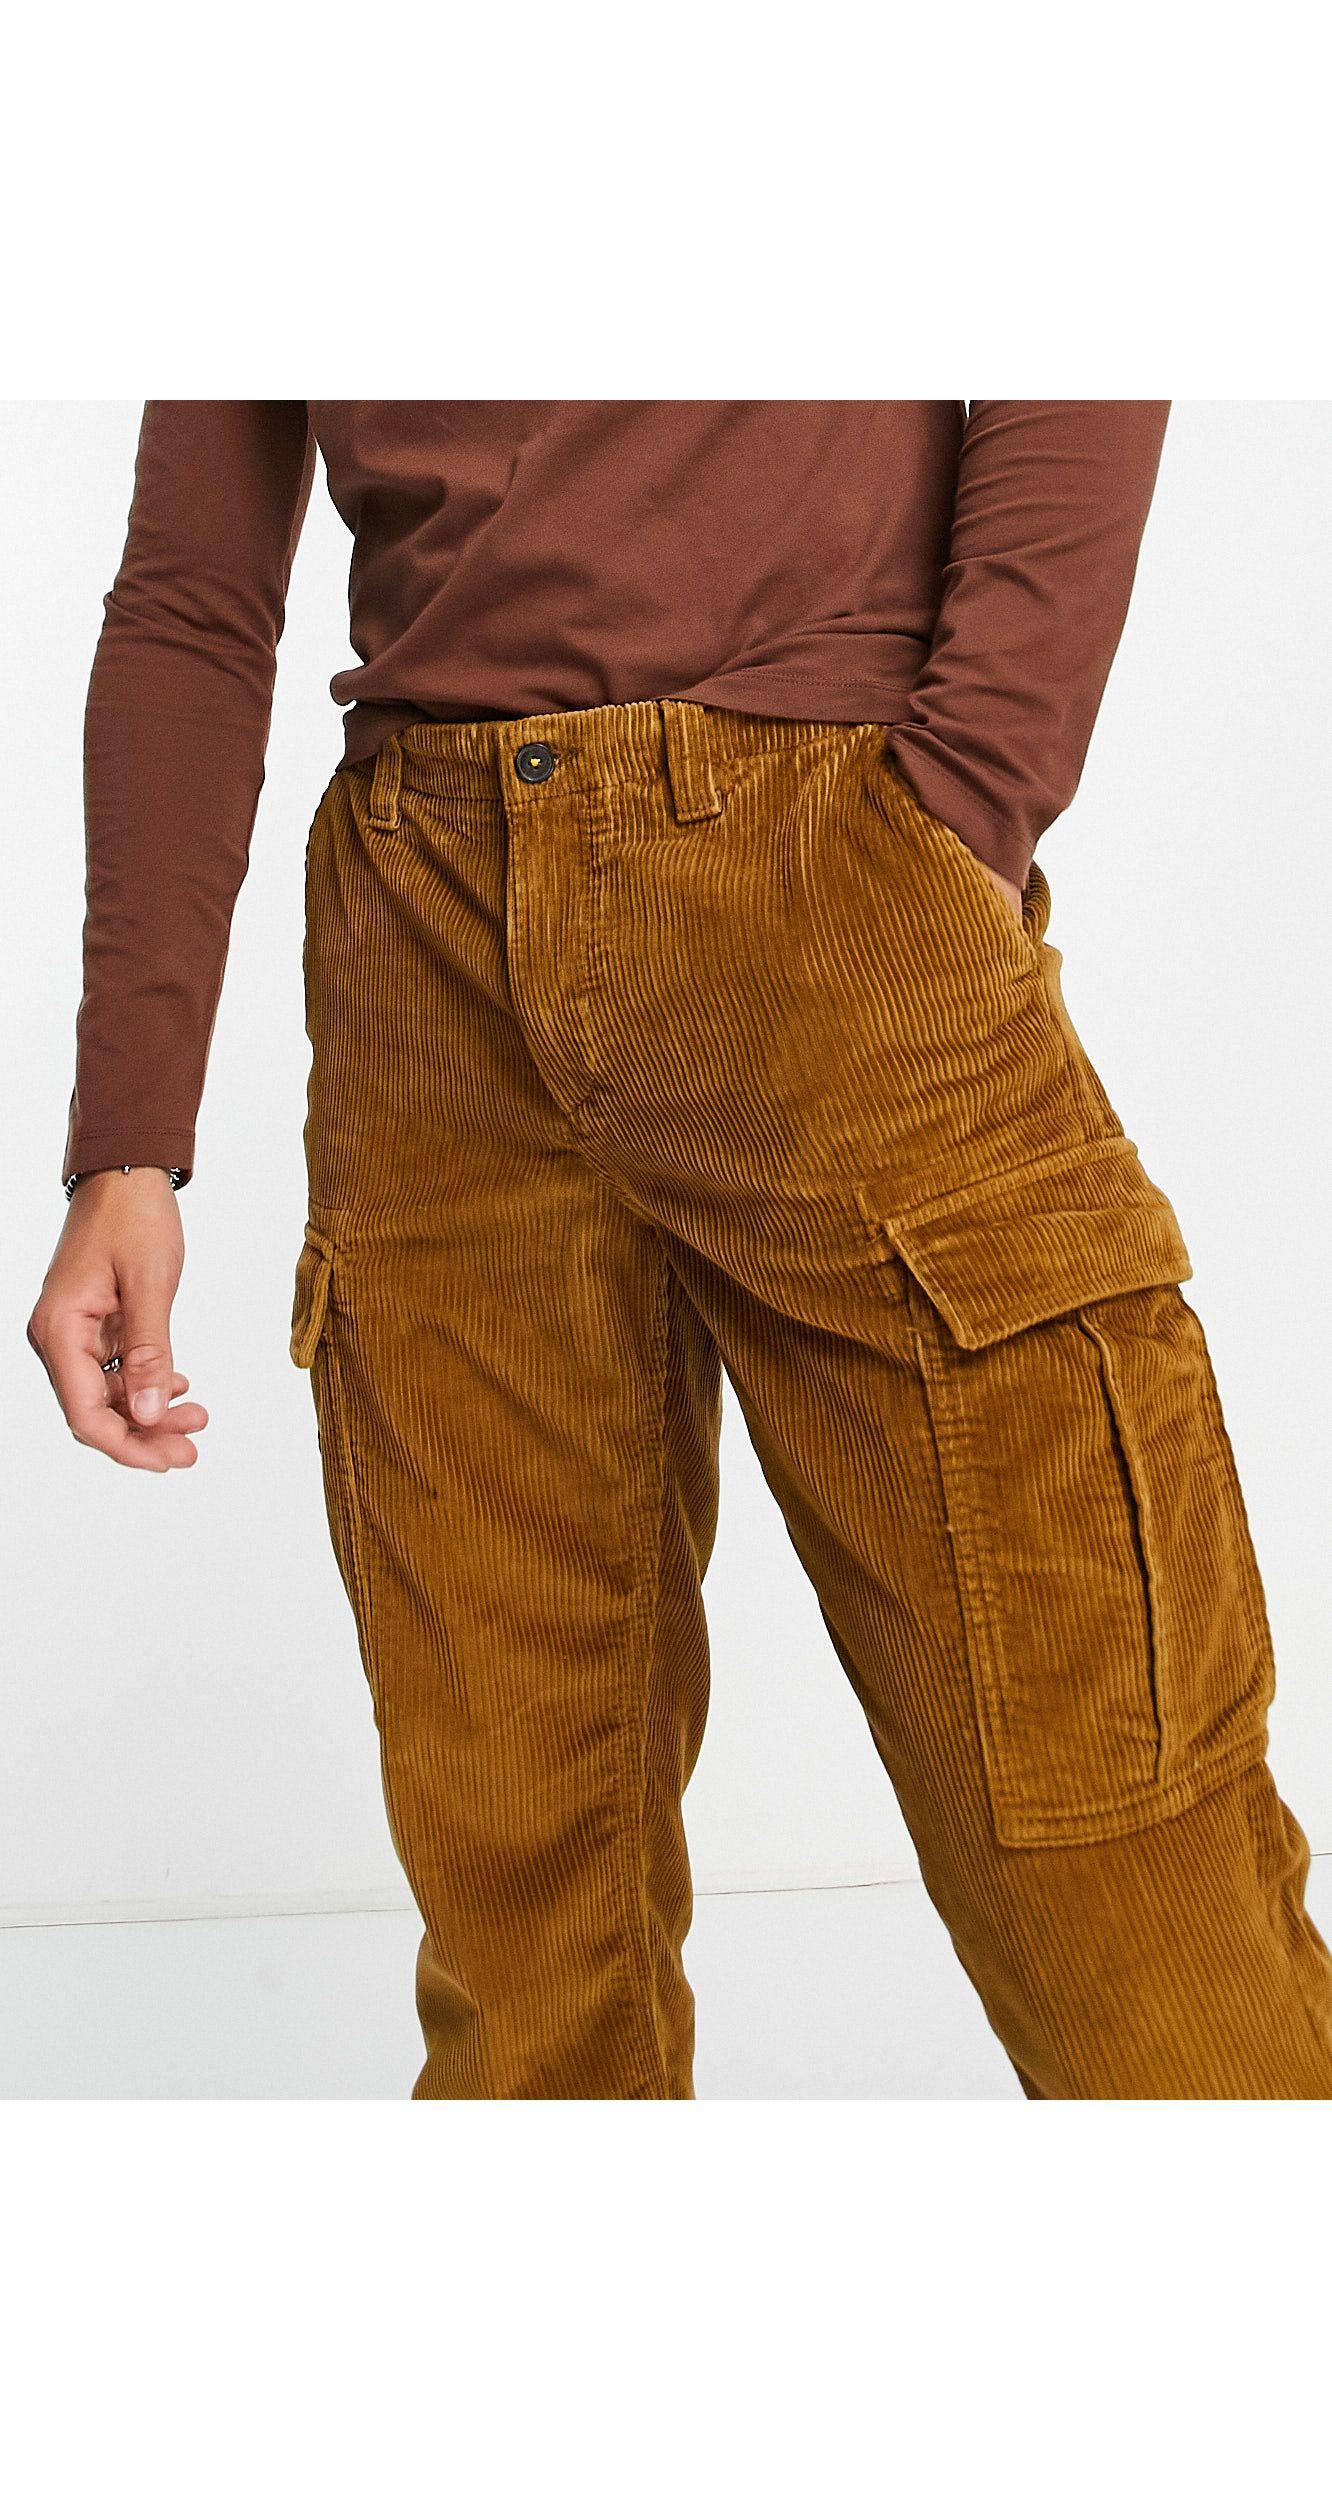 Timberland pants - Gem